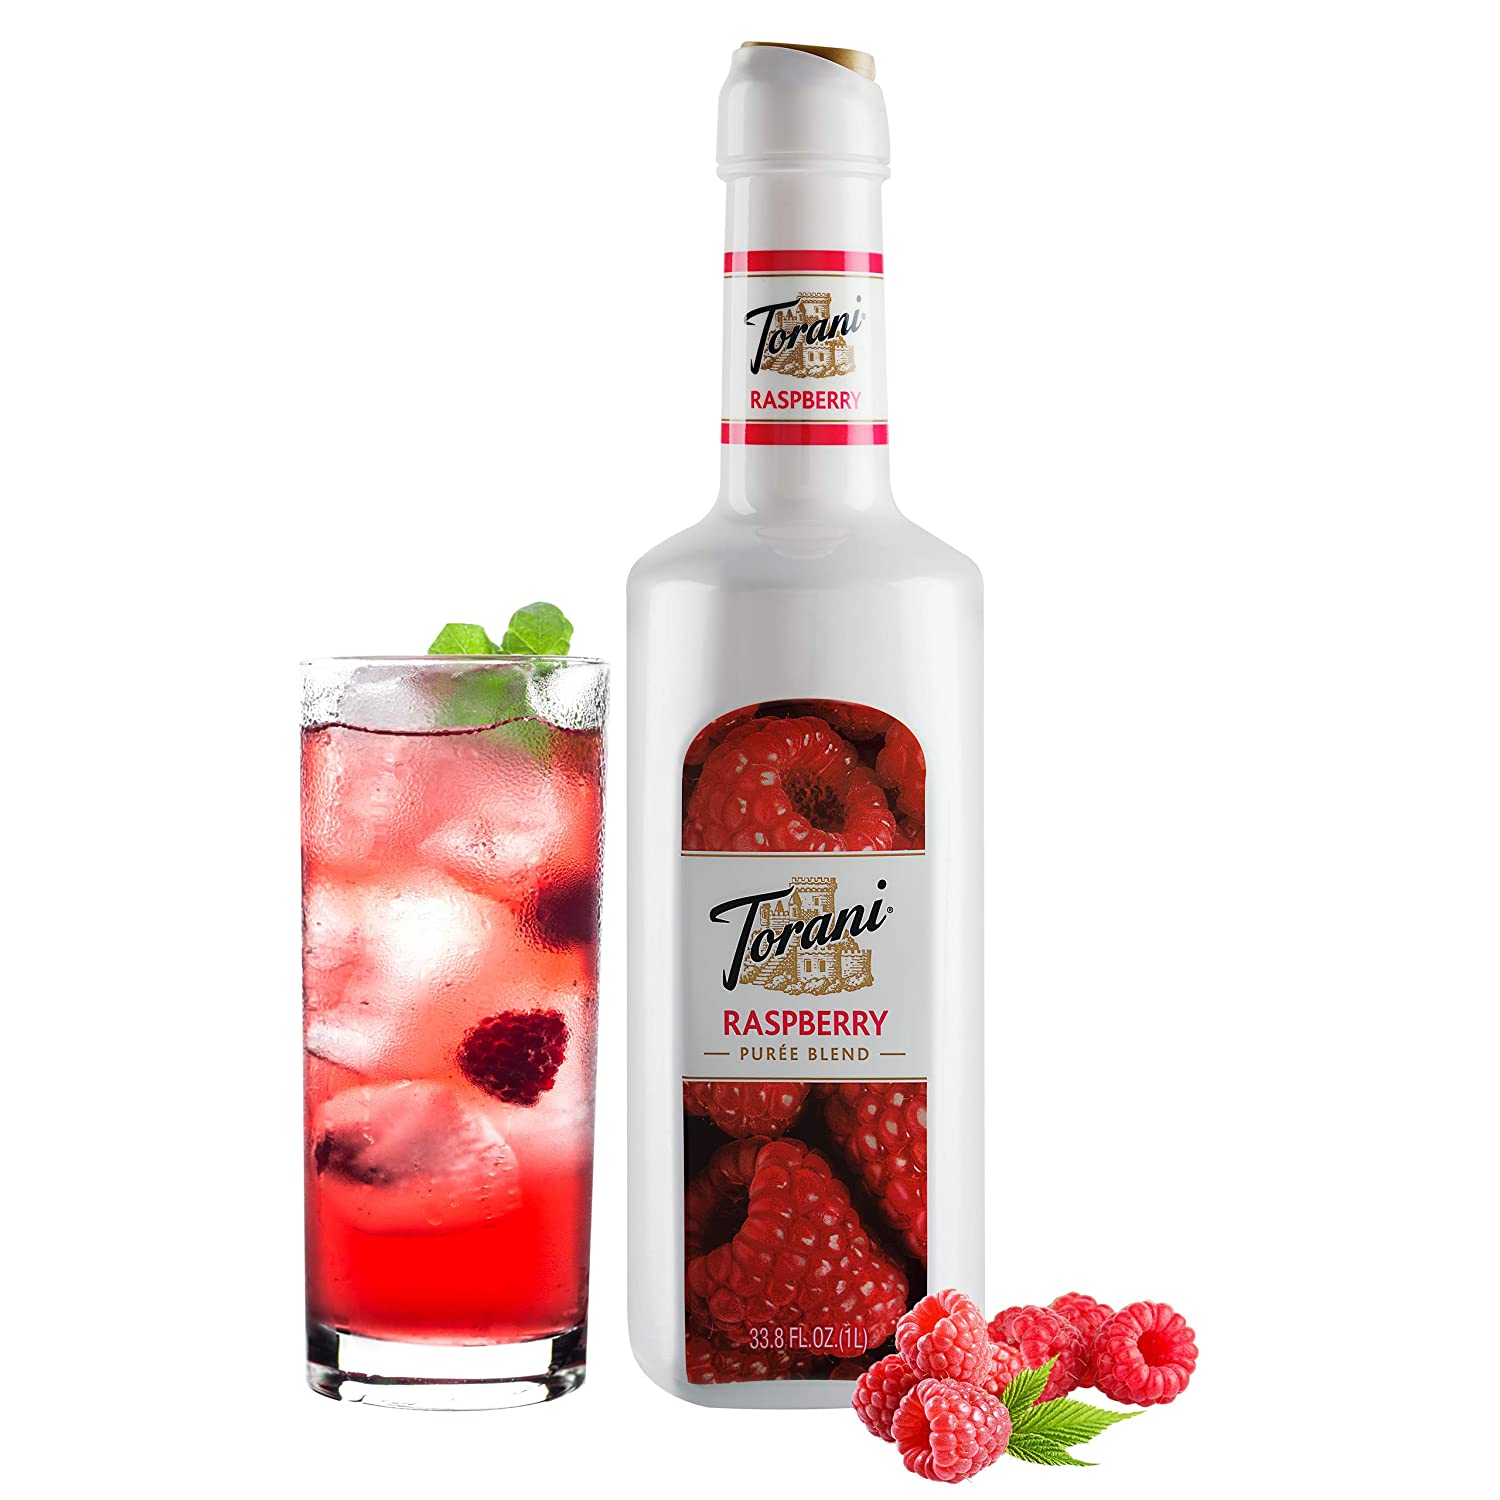 Torani Puree Blend: 1L Bottle: Raspberry